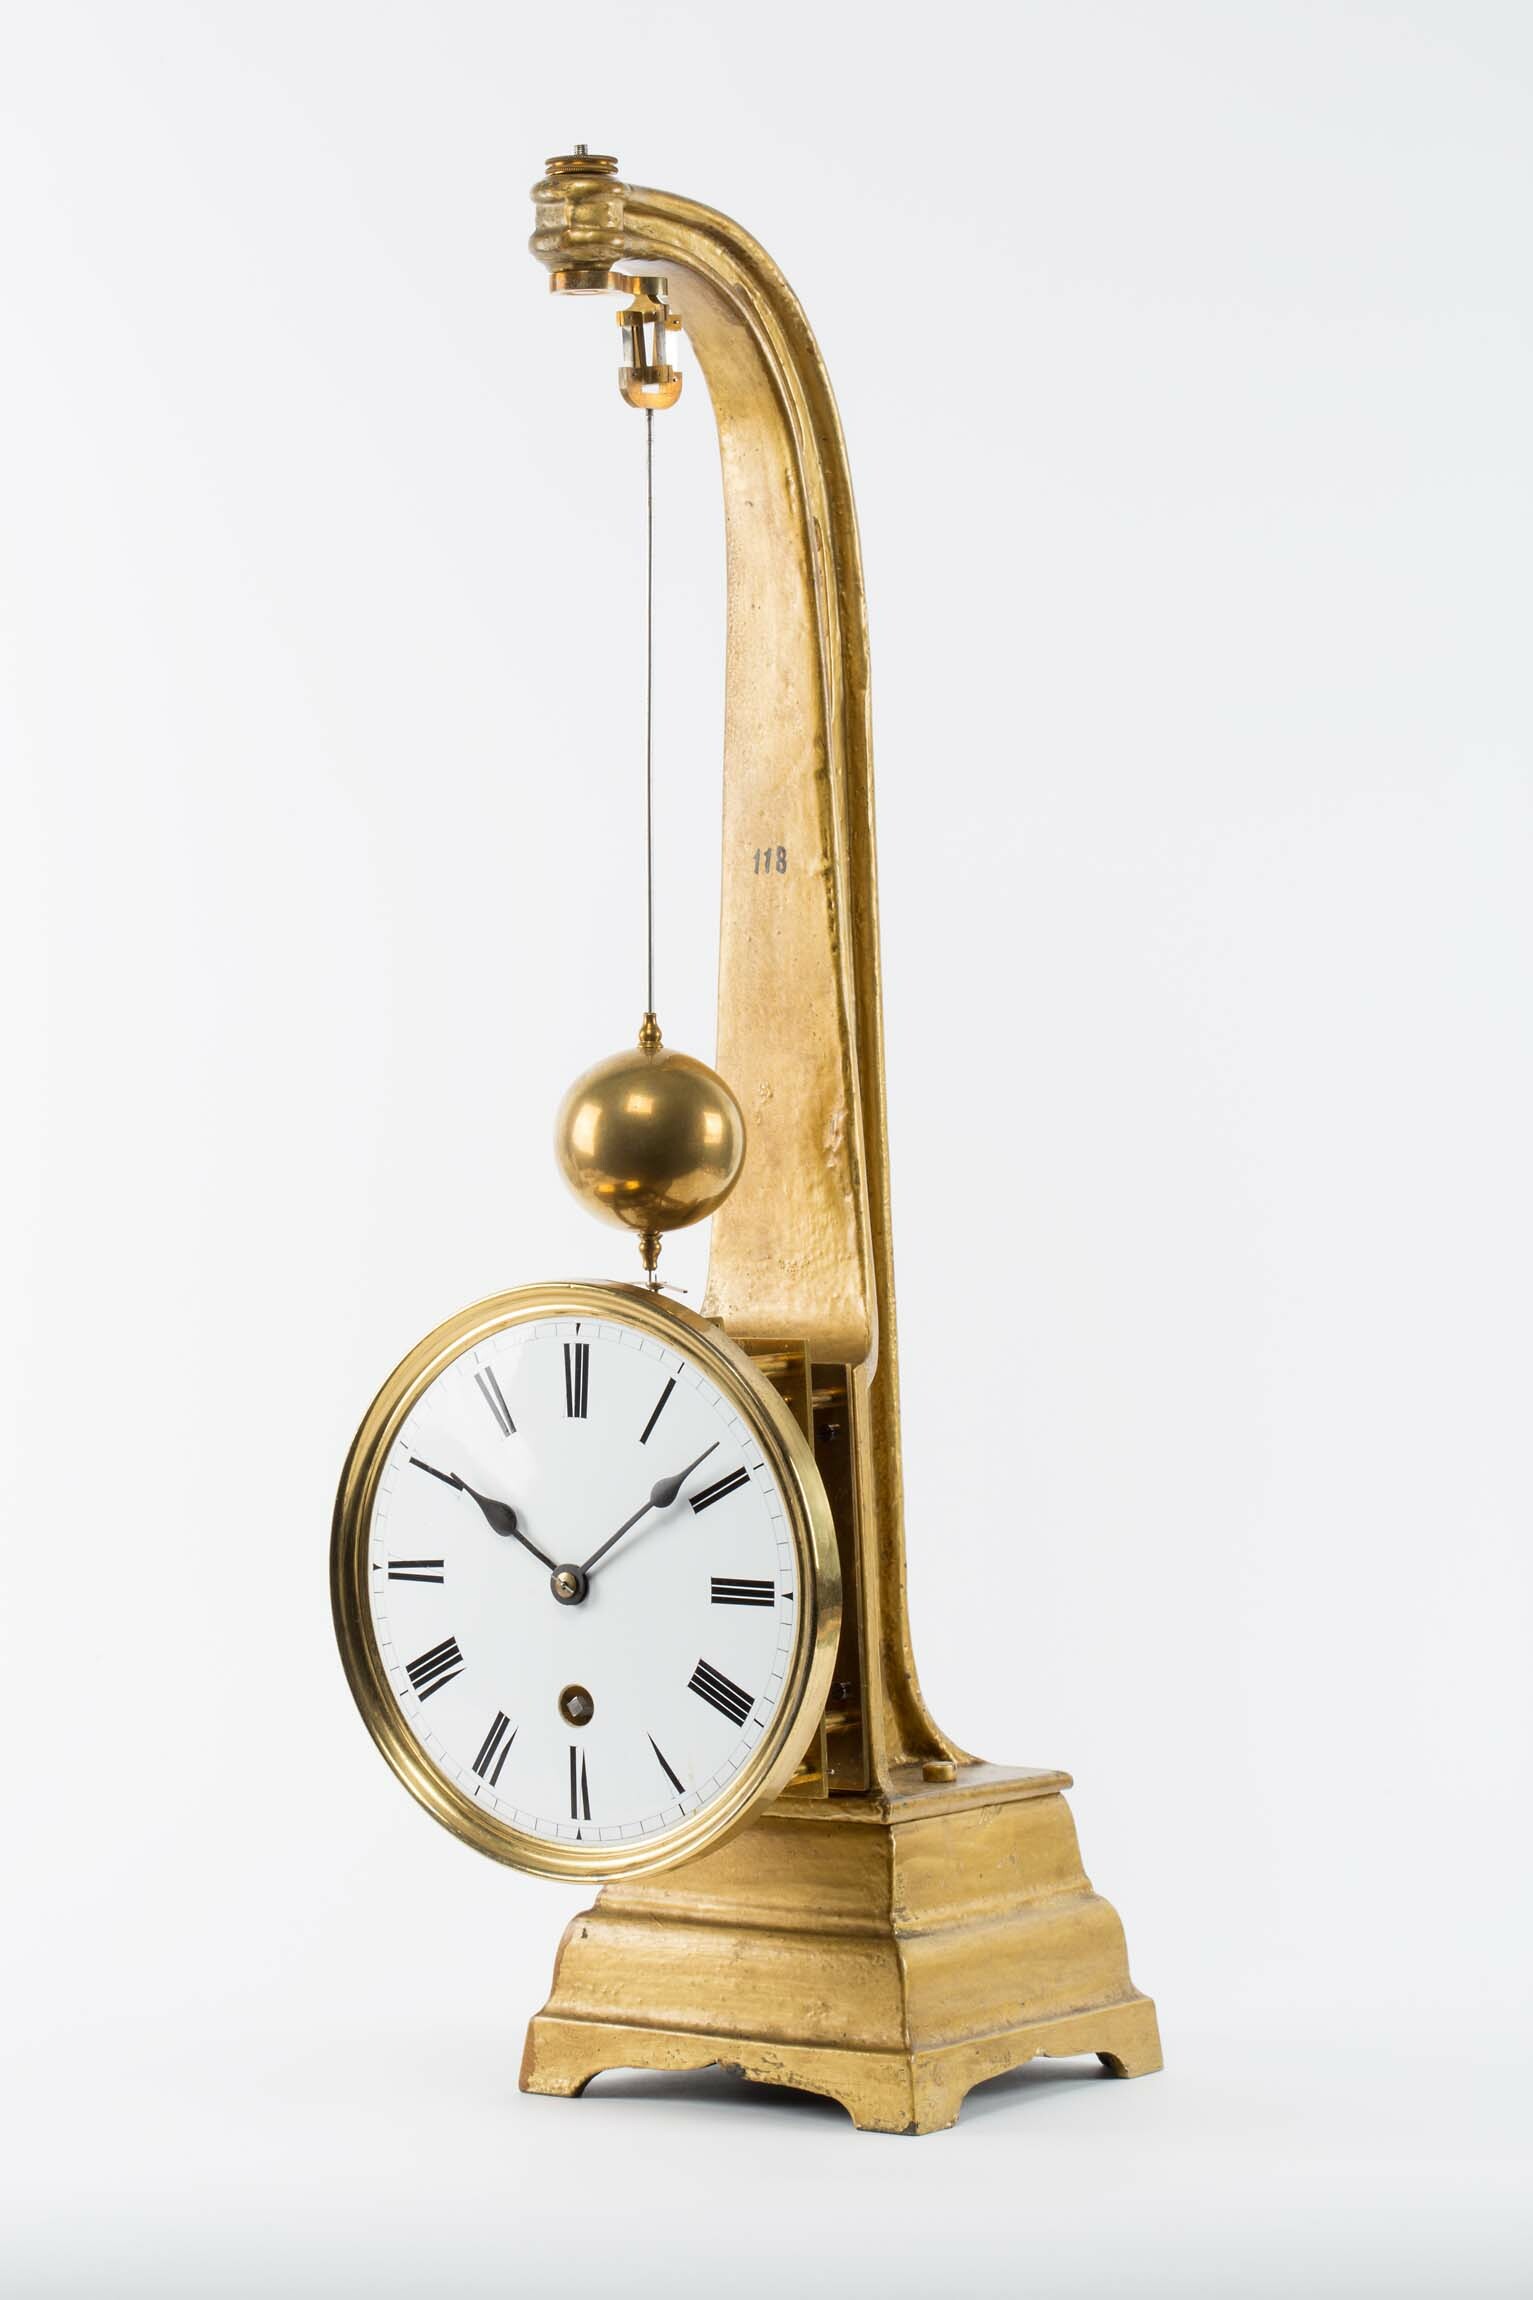 Kegelpendeluhr, Uhrmacherschule Furtwagen, 1890 (Deutsches Uhrenmuseum CC BY-SA)